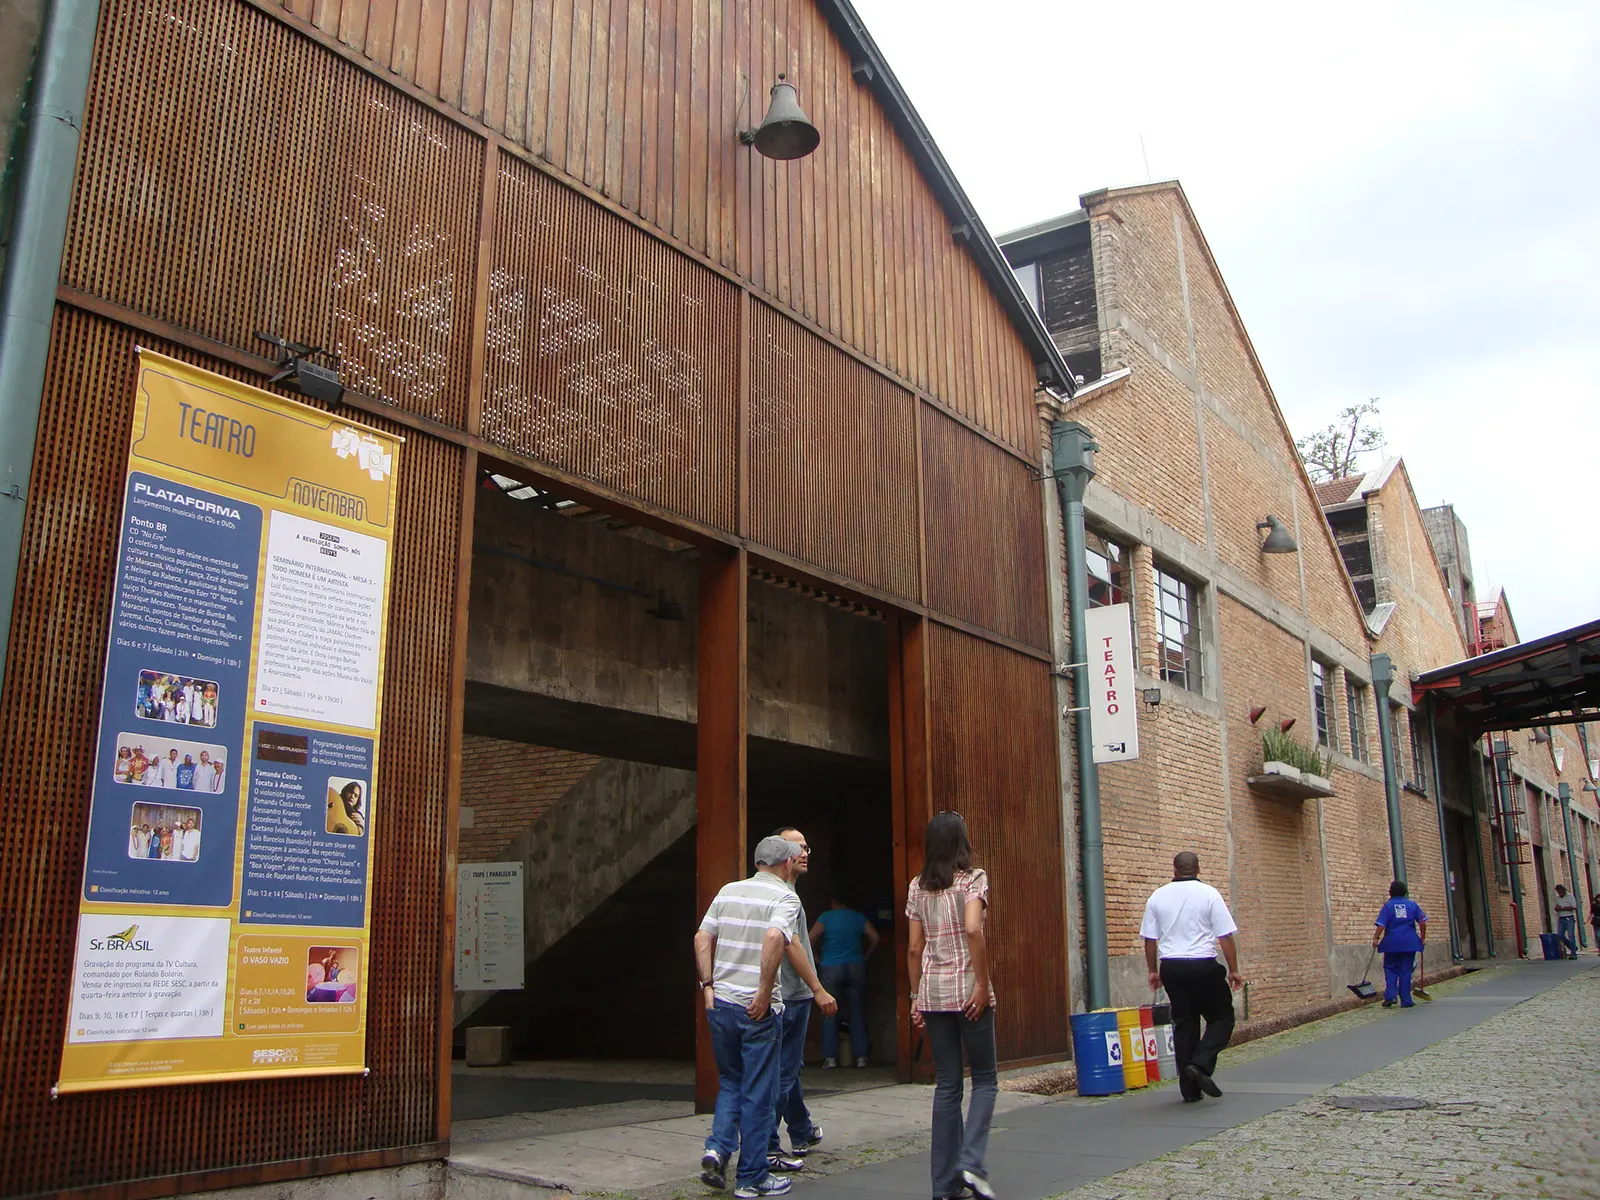 Nella prima fase dei lavori, il restauro dei vecchi capannoni della fabbrica da parte di Lina Bo Bardi. 2010. Foto Cassia Monteiro.